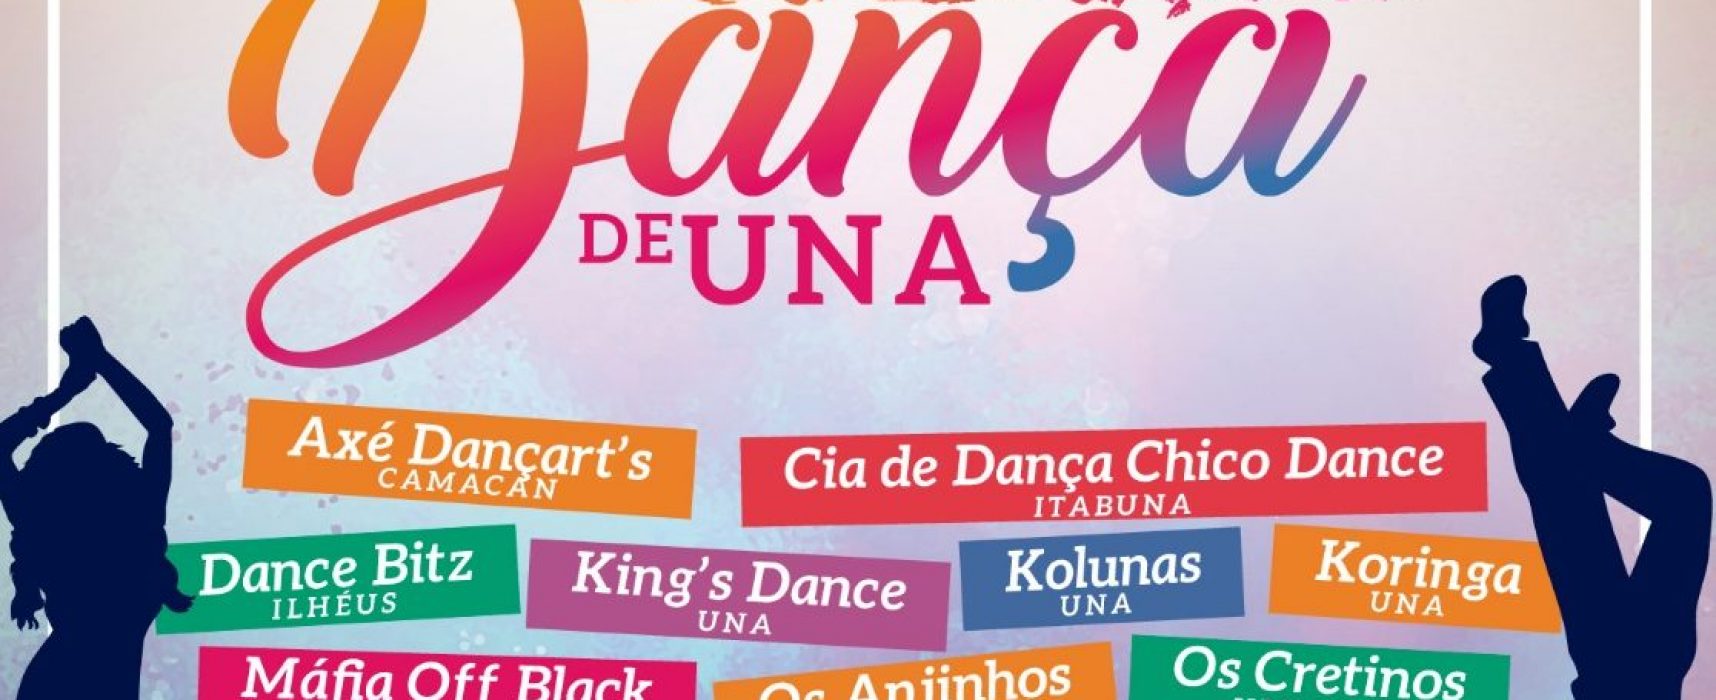 Festival de Dança de Una vai mobilizar dançarinos da região sul do estado